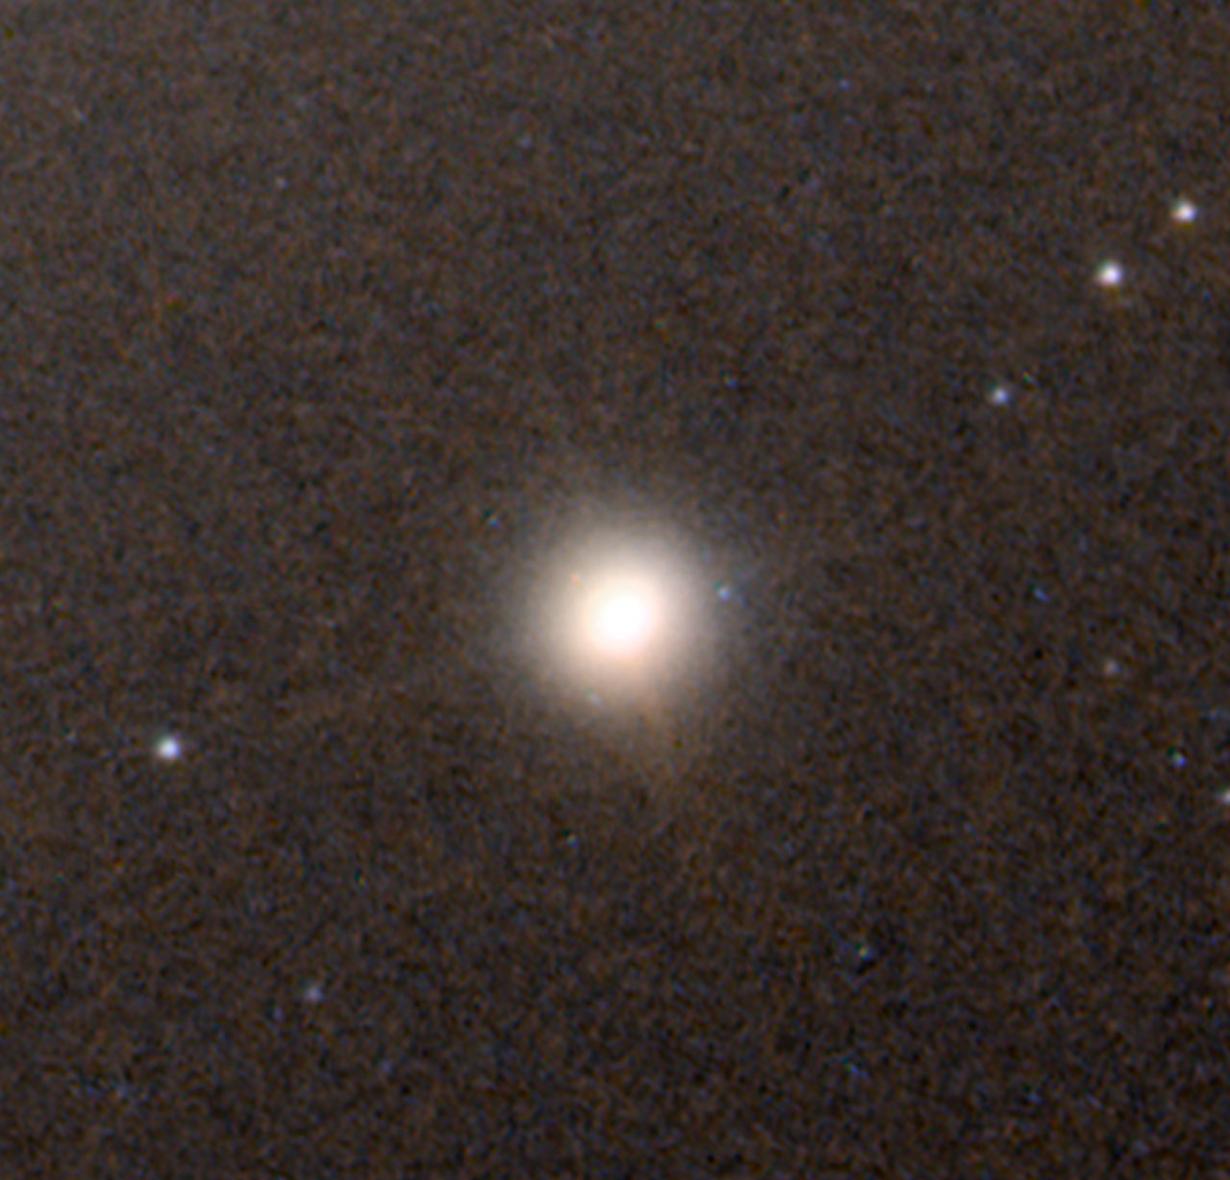 矮星系M60-UCD1中心地带发现潜藏一个“超大质量”黑洞